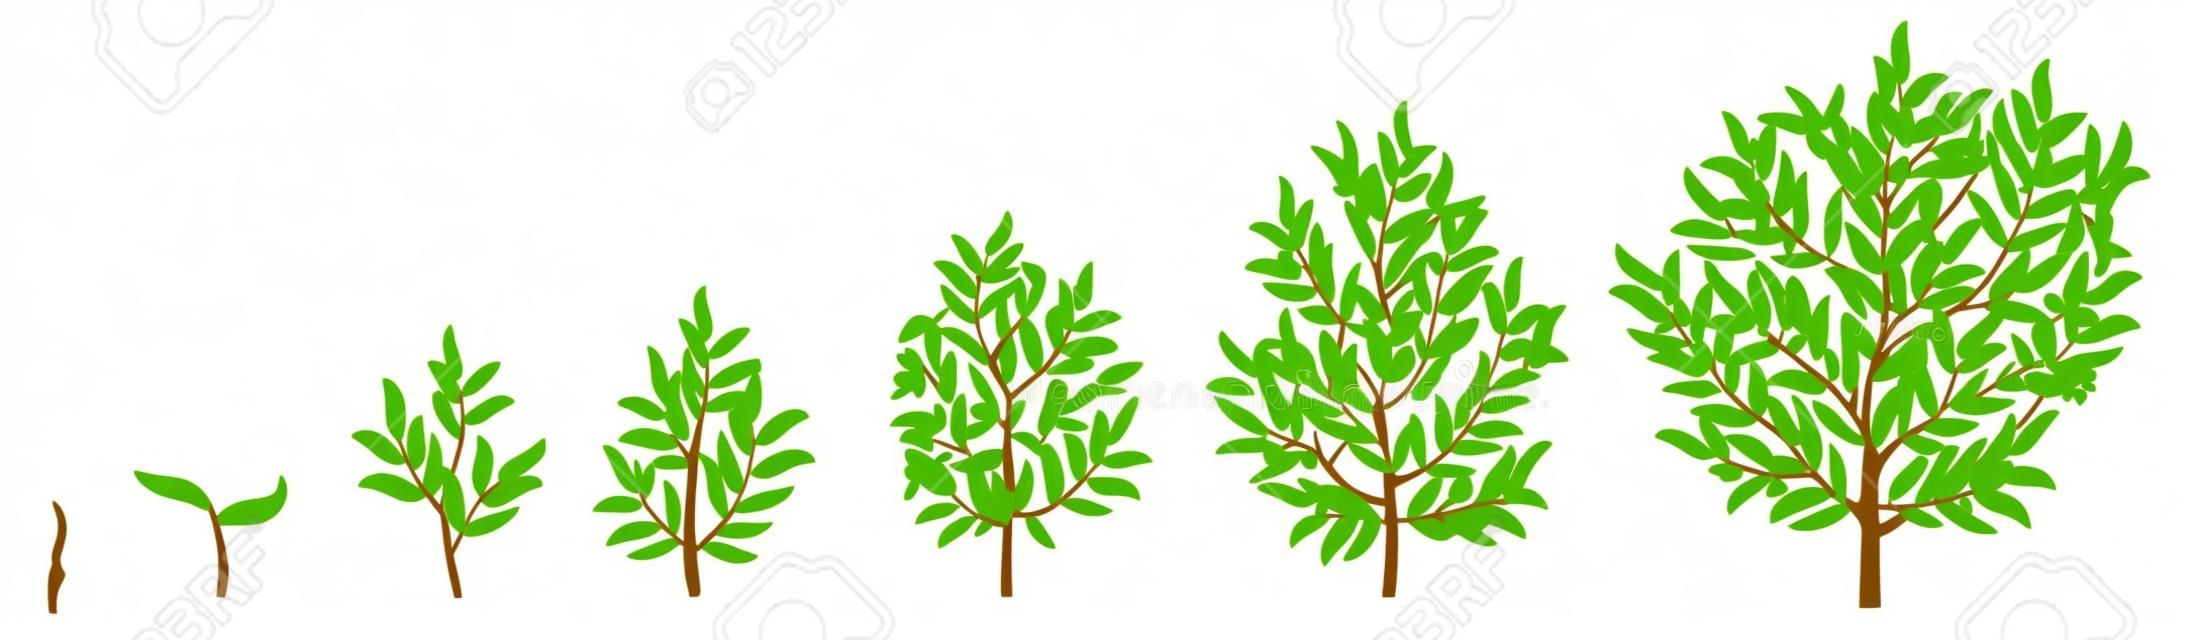 Les phases de la croissance de plantes illustration de vecteur